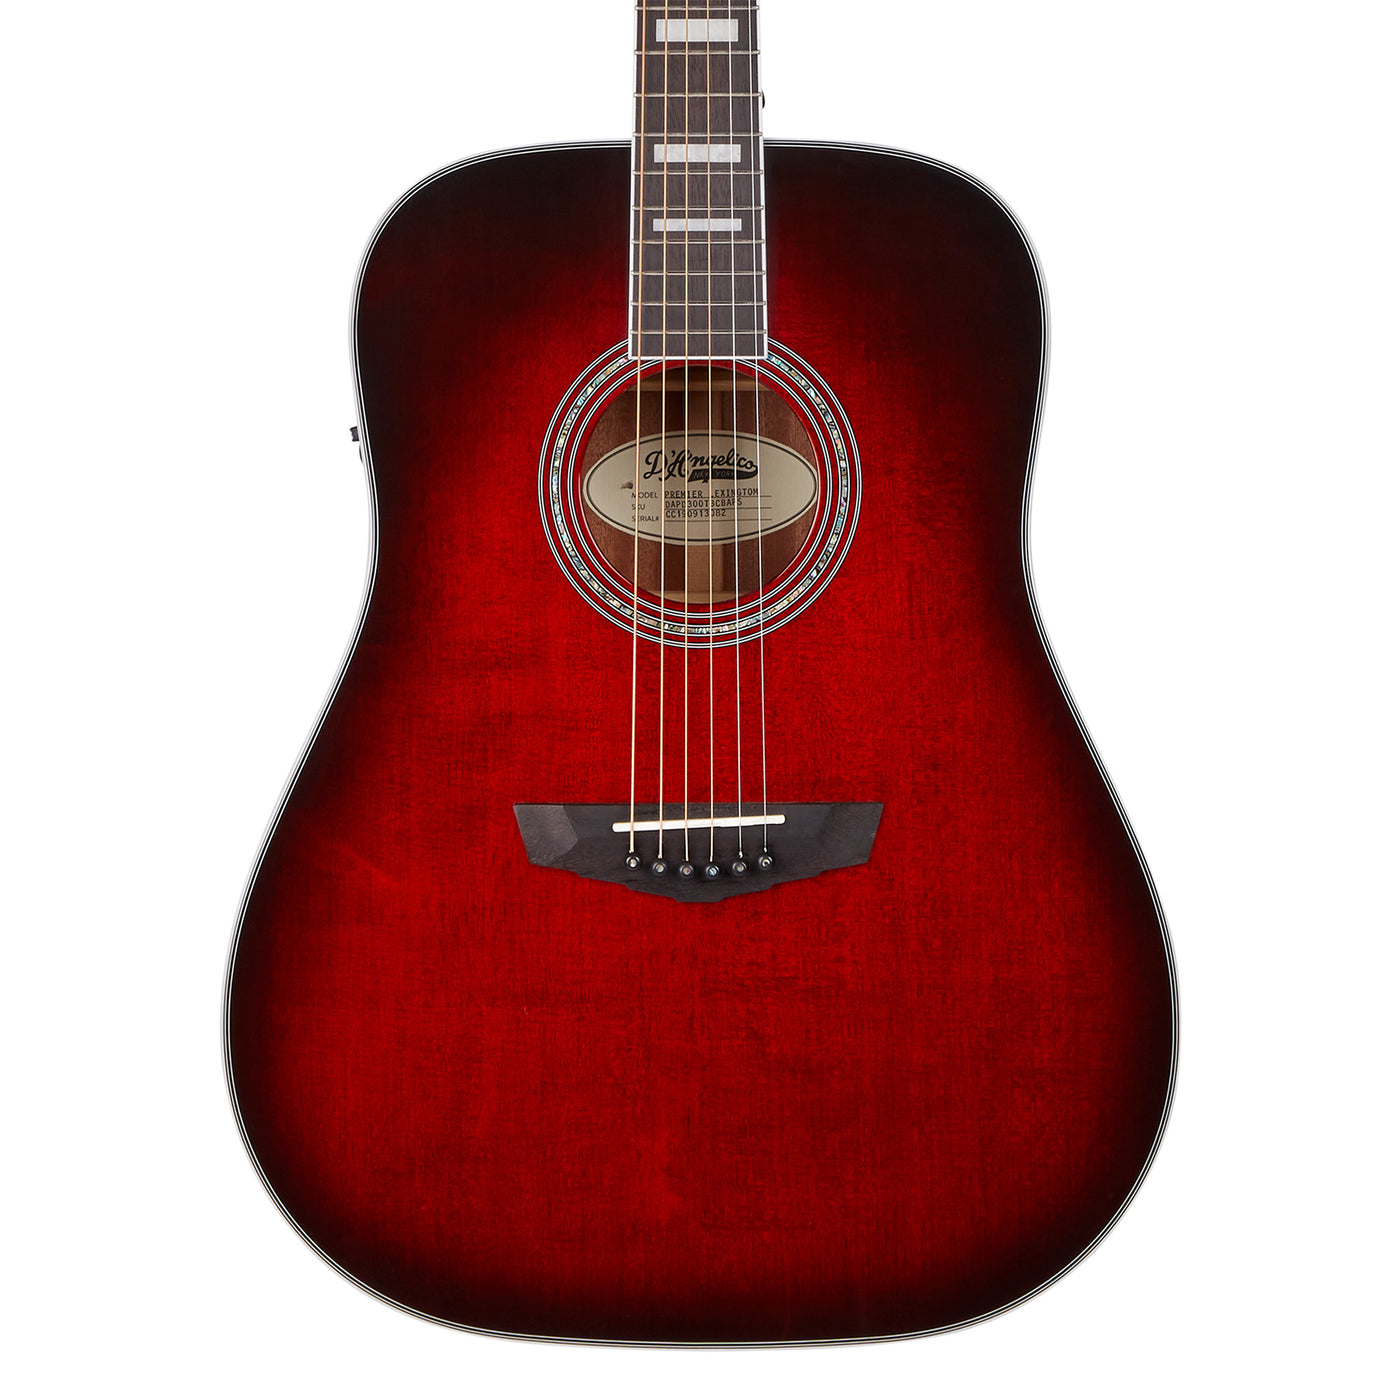 D’Angelico Premier Lexington Dreadnought Acoustic Electric Guitar, Black Cherry Burst (DAPD300TBCBAPS)